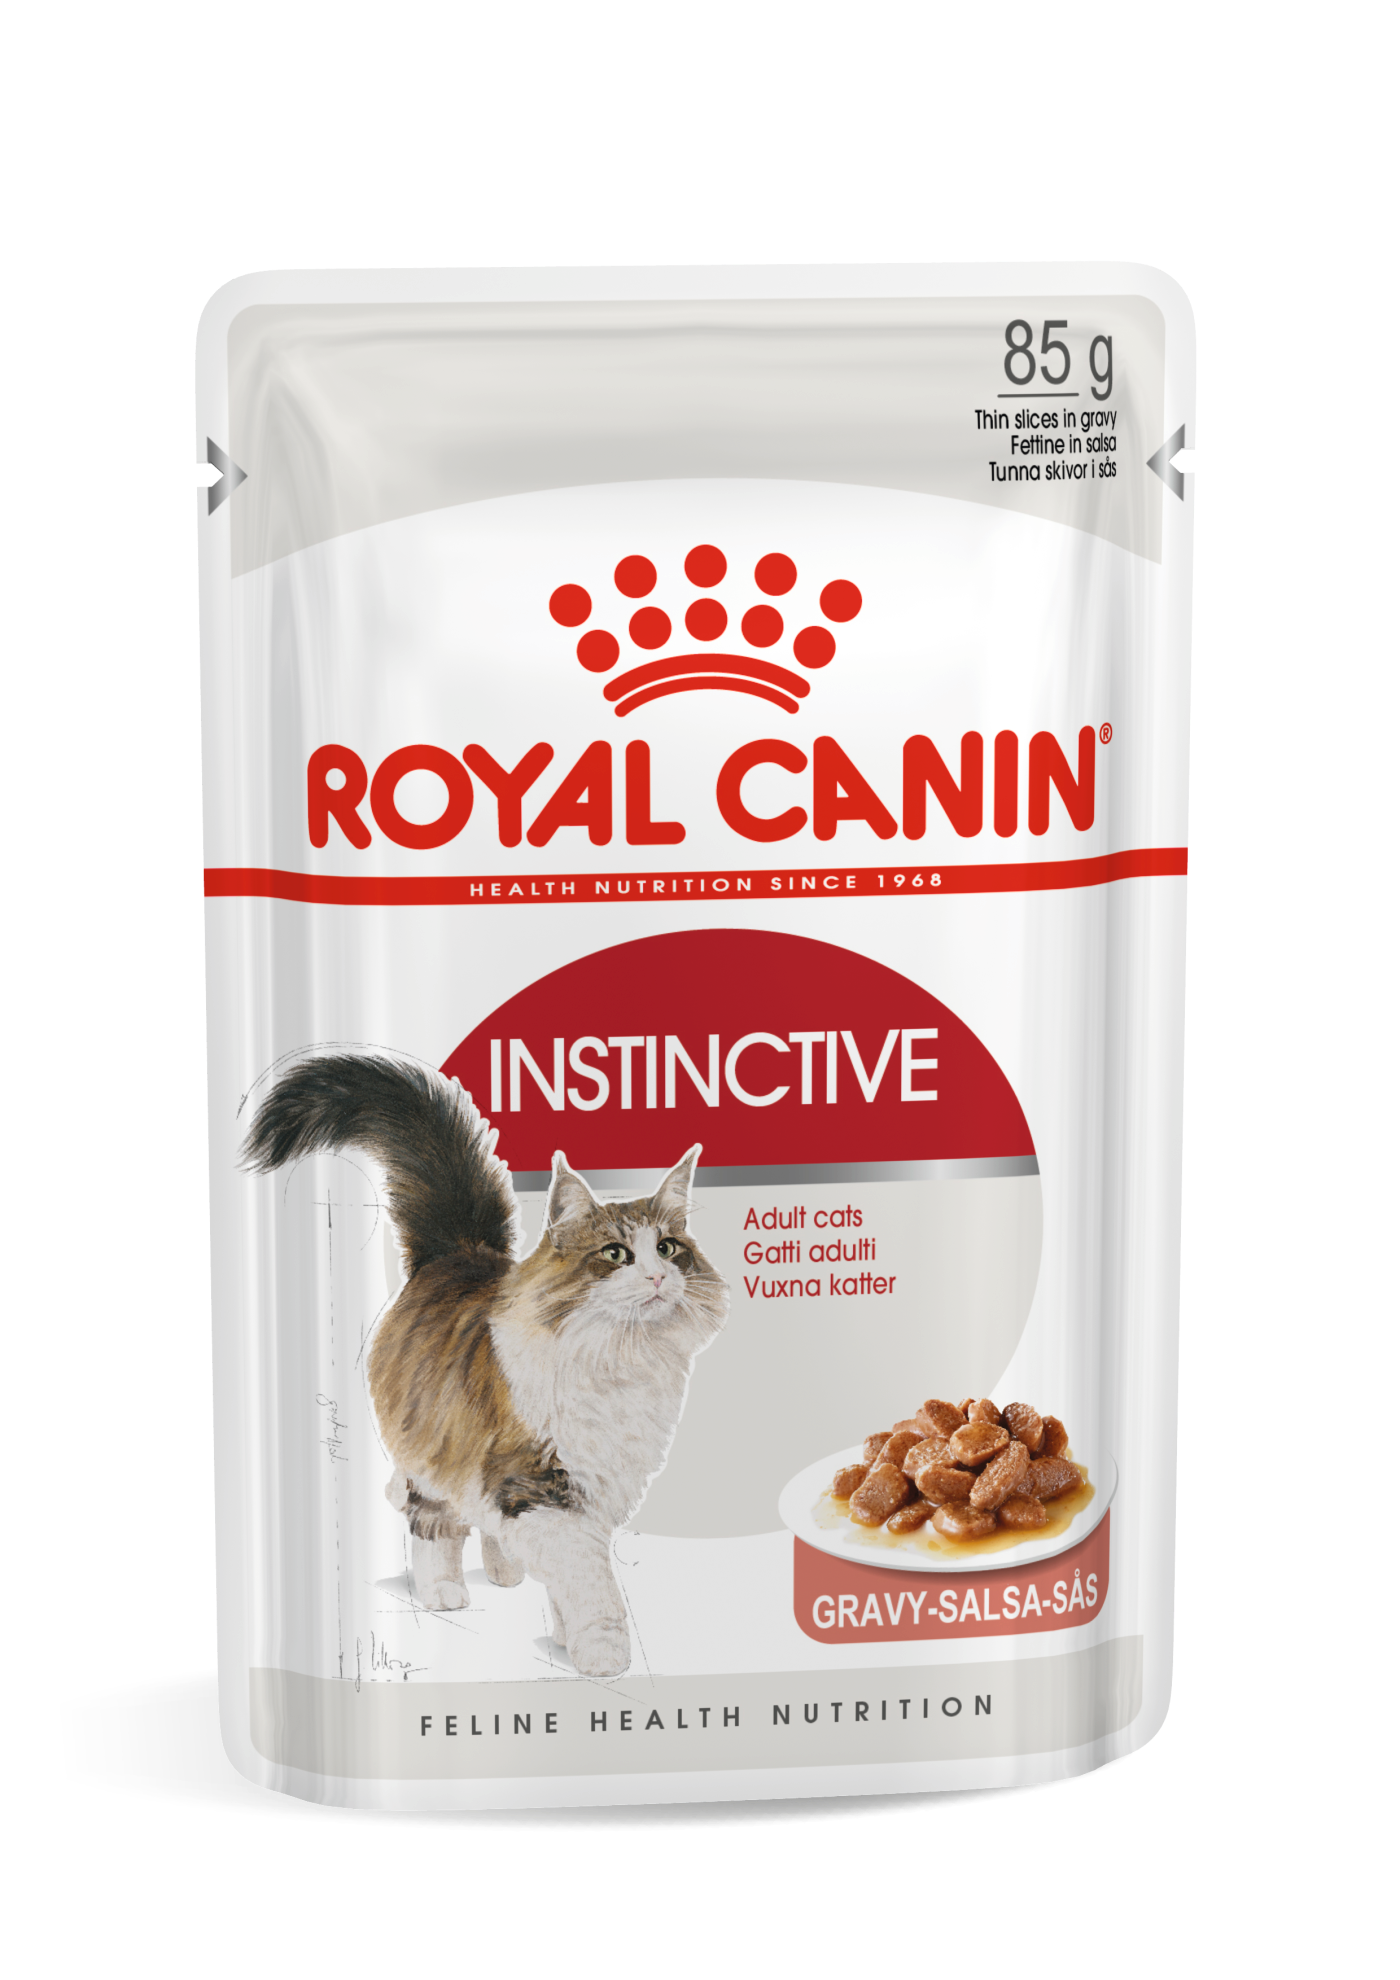 royal canin kitten food near me